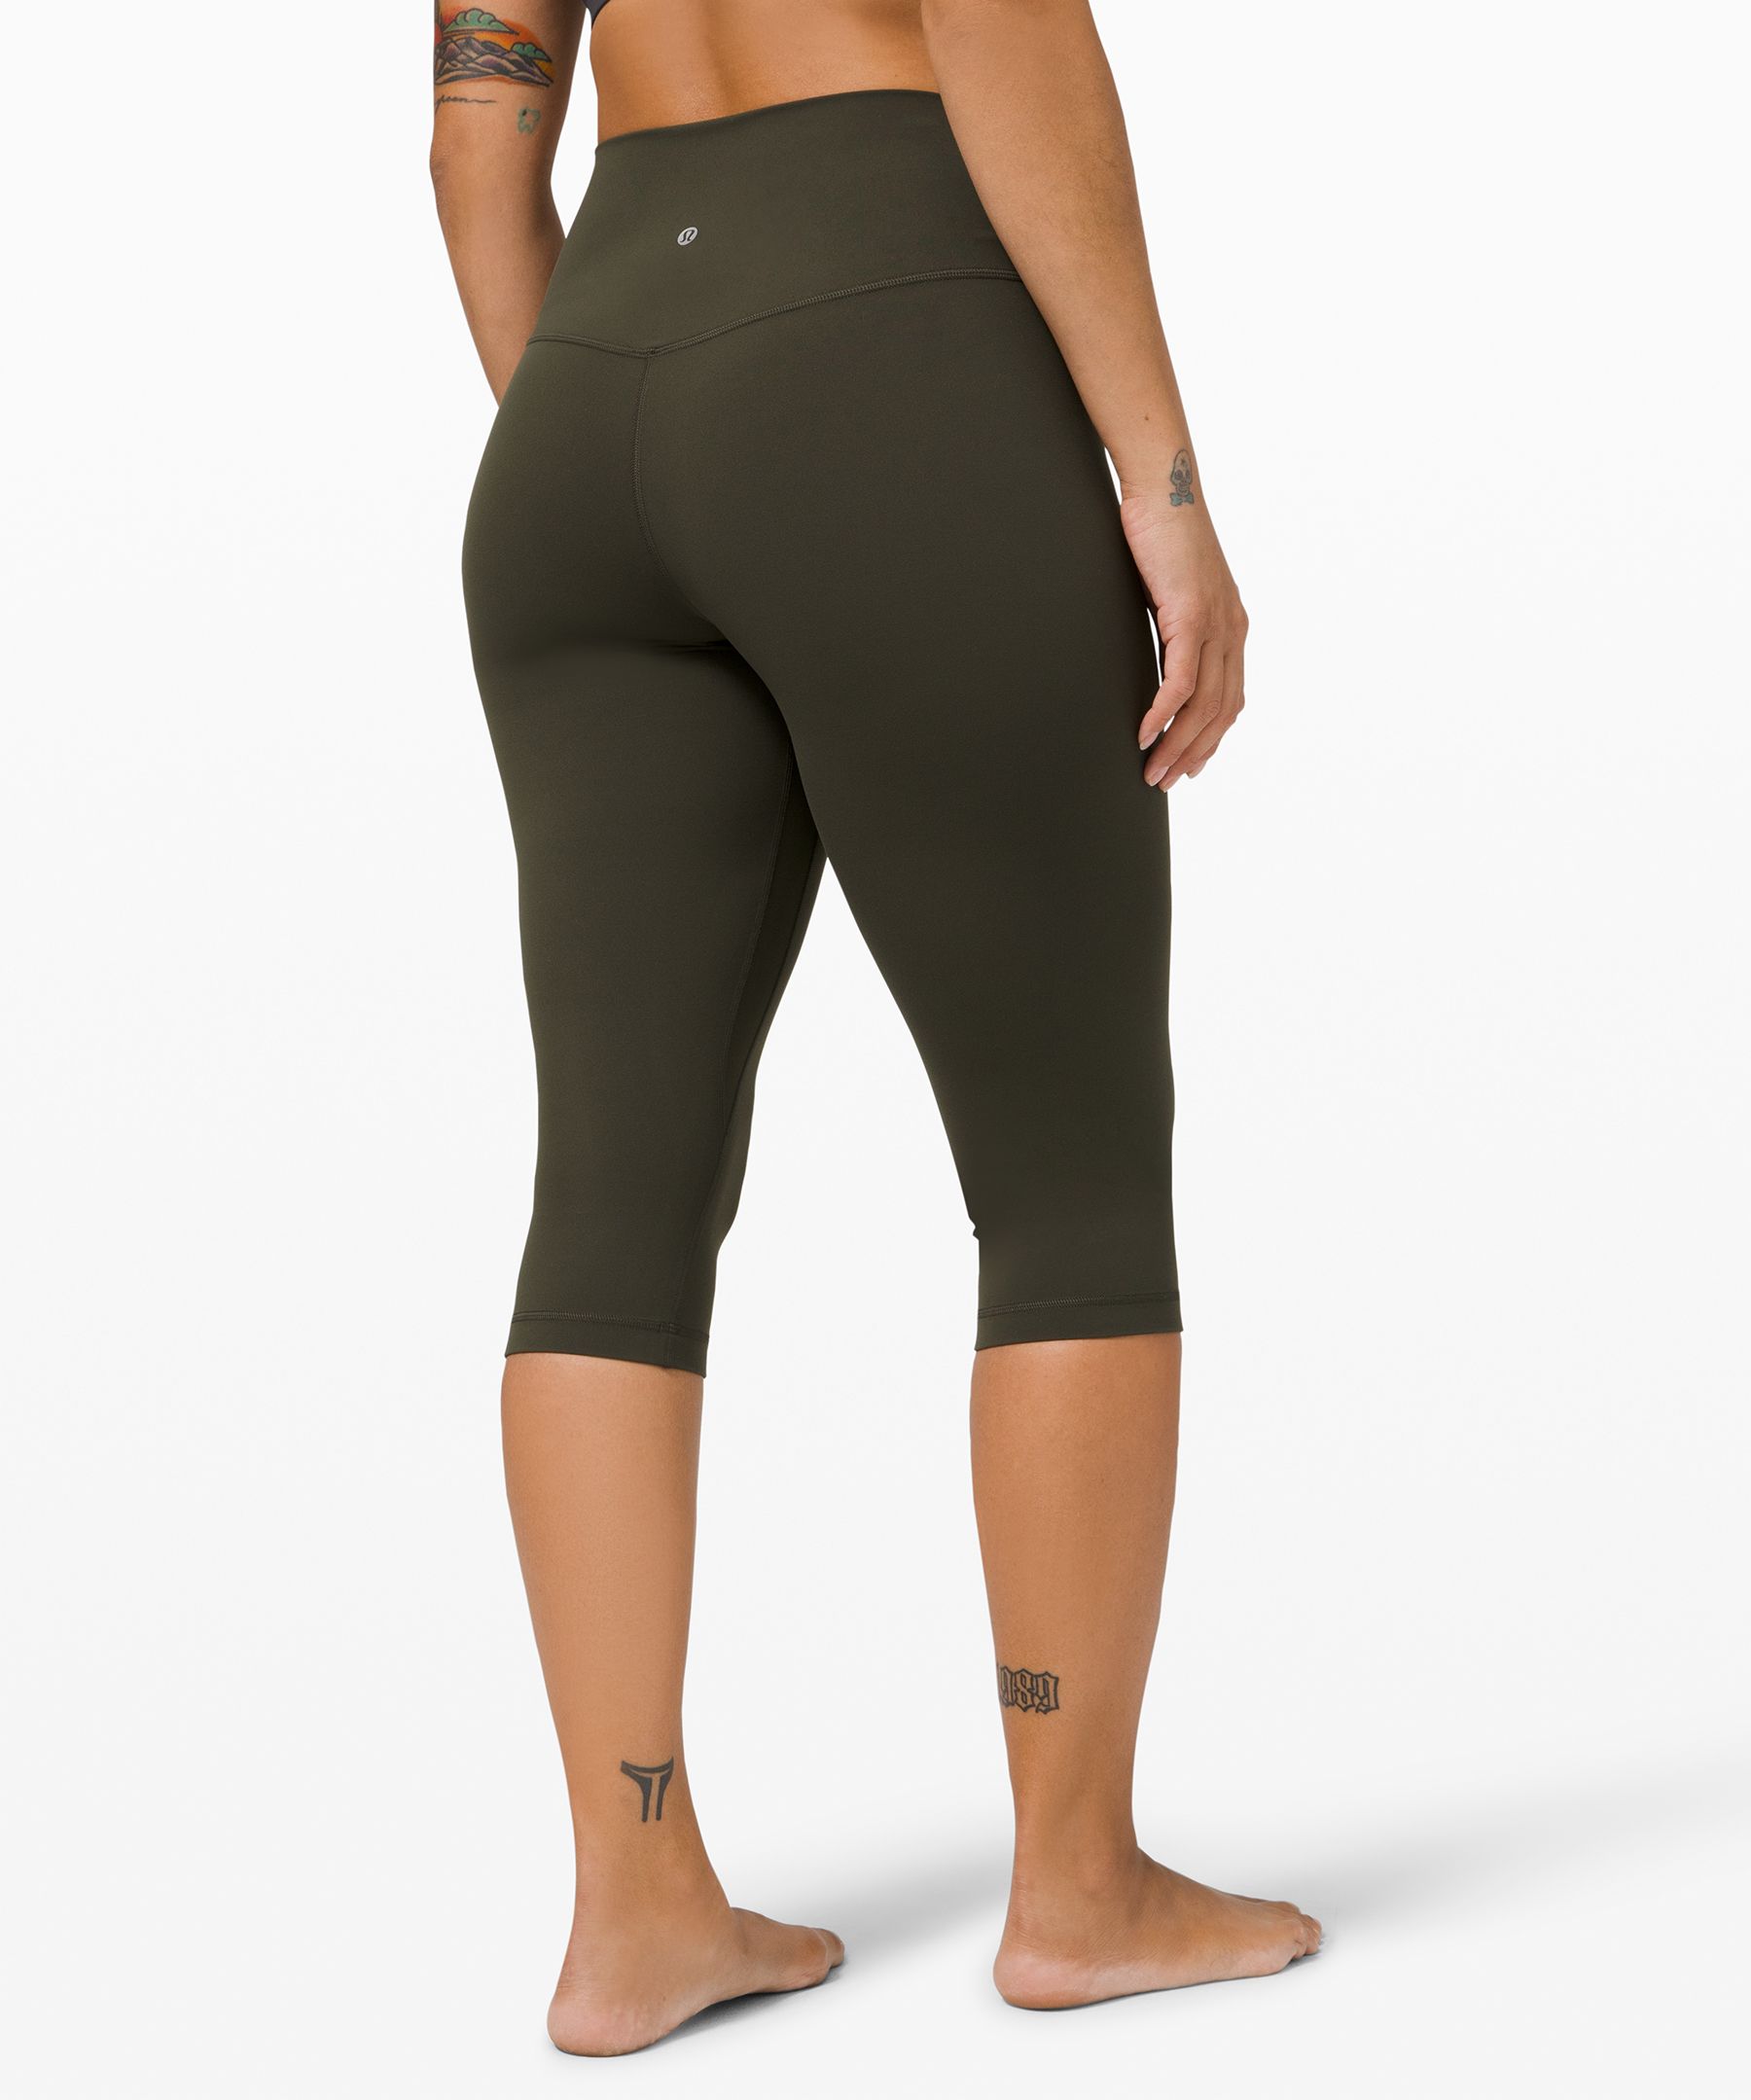 Lululemon Align Capri Leggings Black Green Size 6 Zipper Pocket Stretch  Yoga - $54 - From ChasingTags